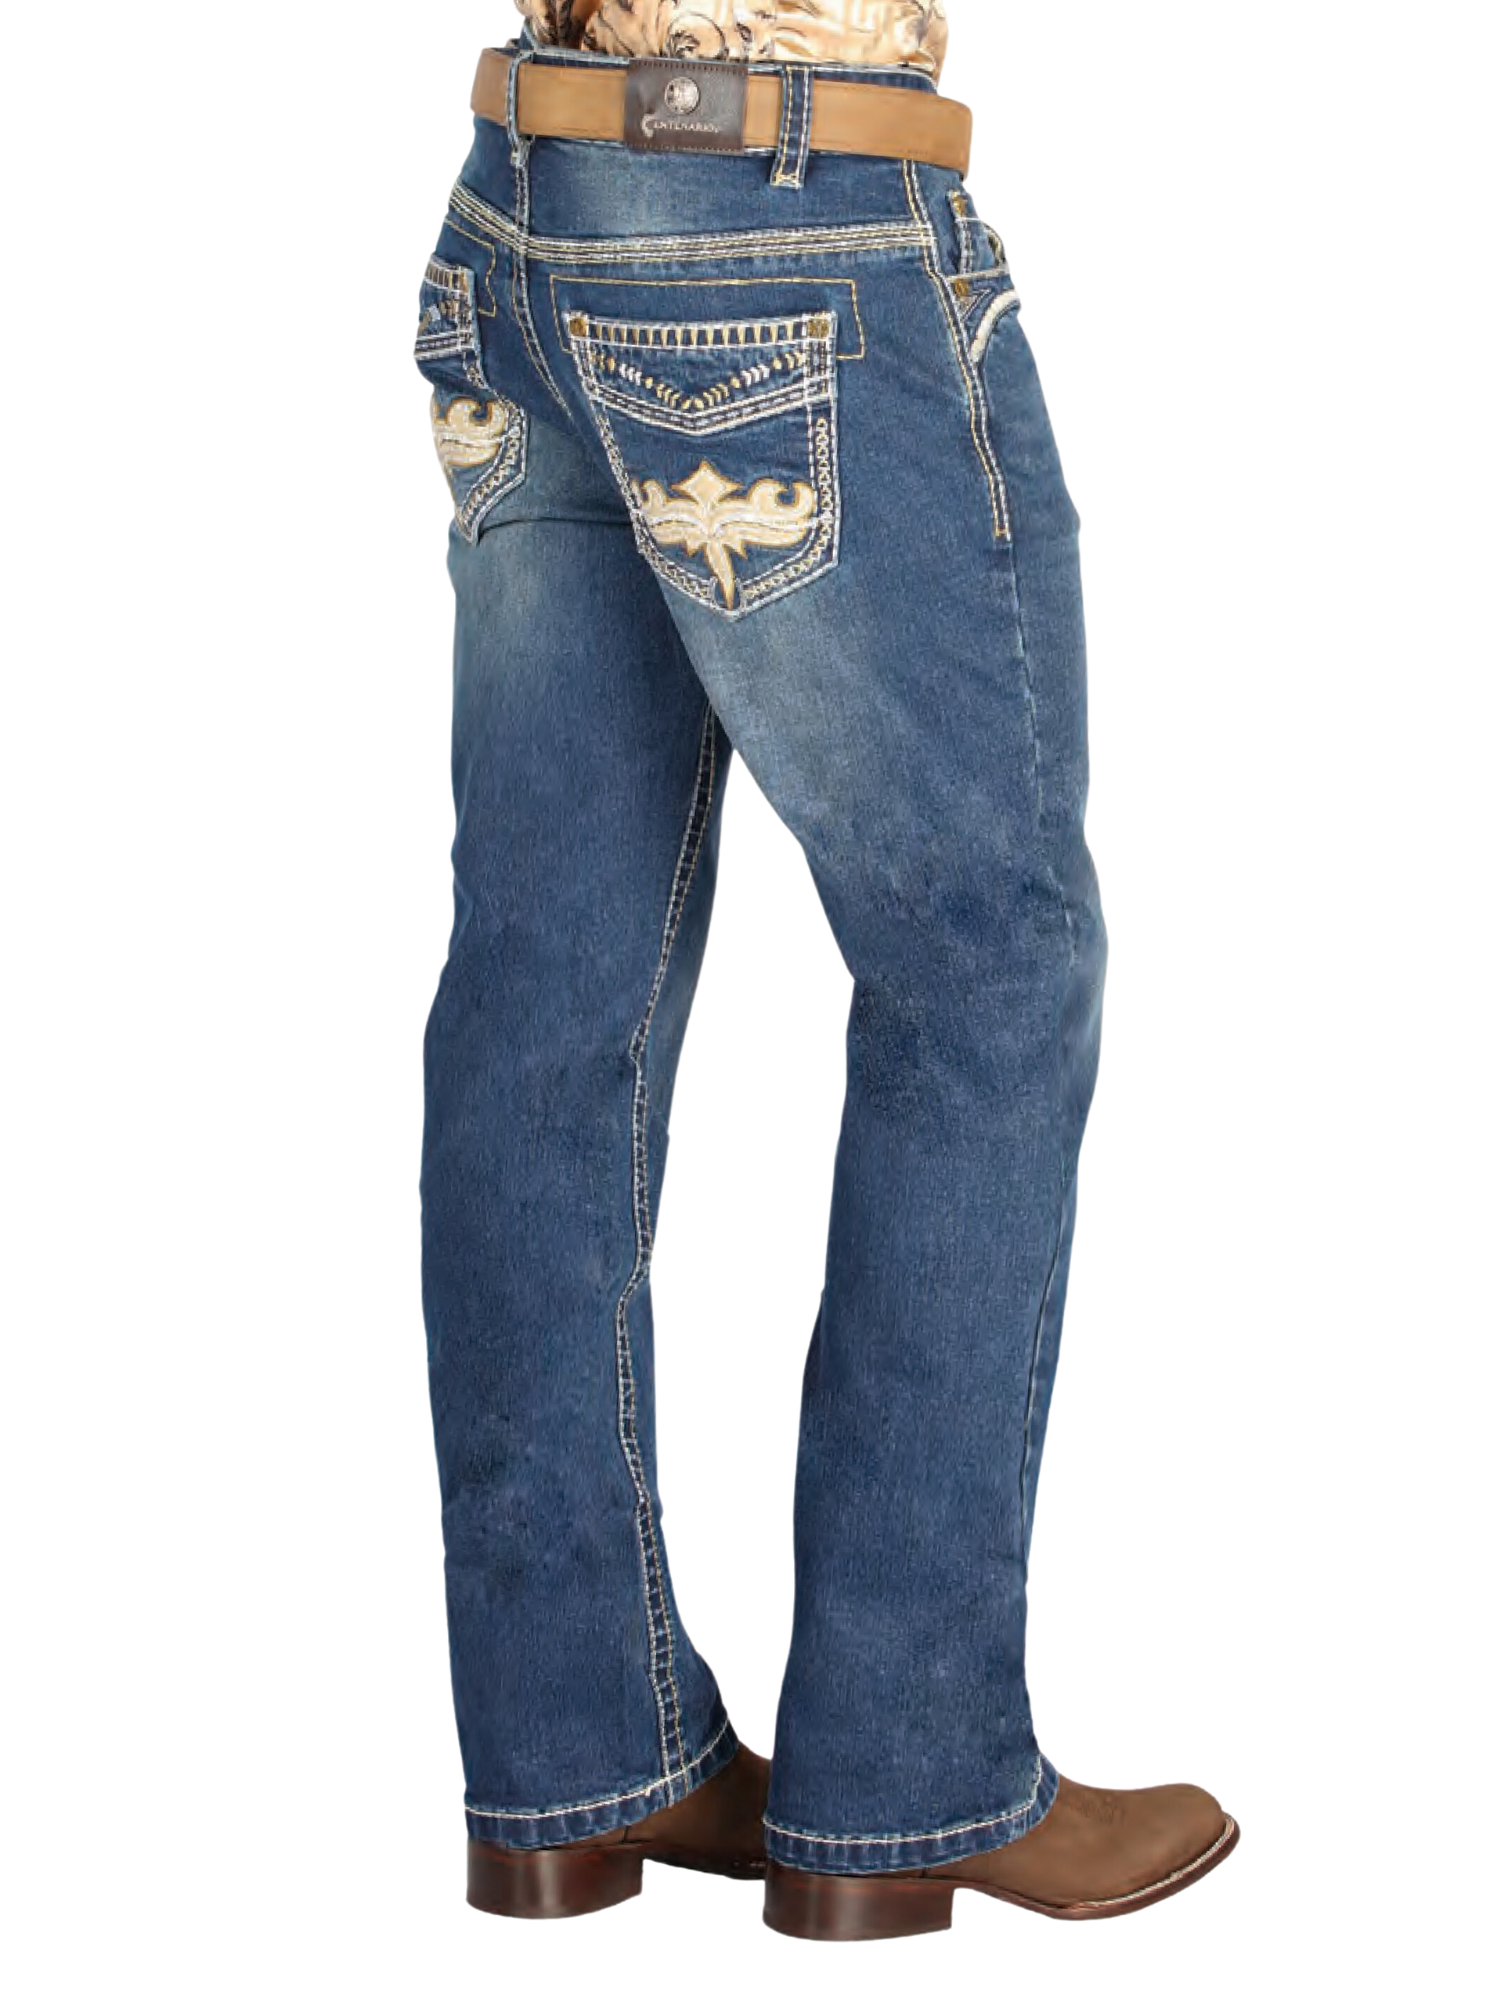 Pantalon Vaquero de Mezclilla Boot Cut Azul Oscuro para Hombre 'Centenario' - ID: 44832 Denim Jeans Centenario 